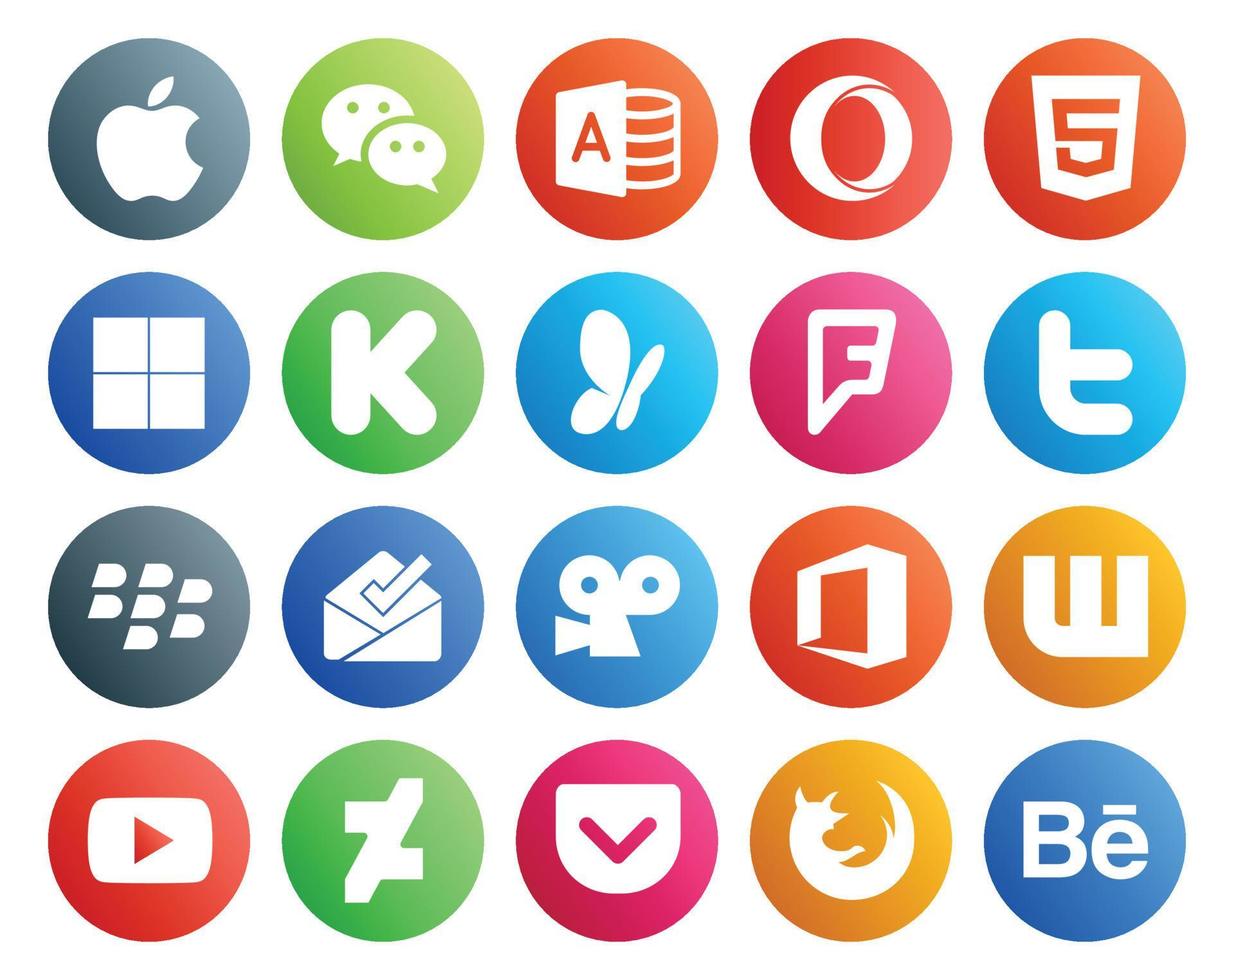 20 Symbolpakete für soziale Medien, einschließlich YouTube Office MSN Viddler Blackberry vektor